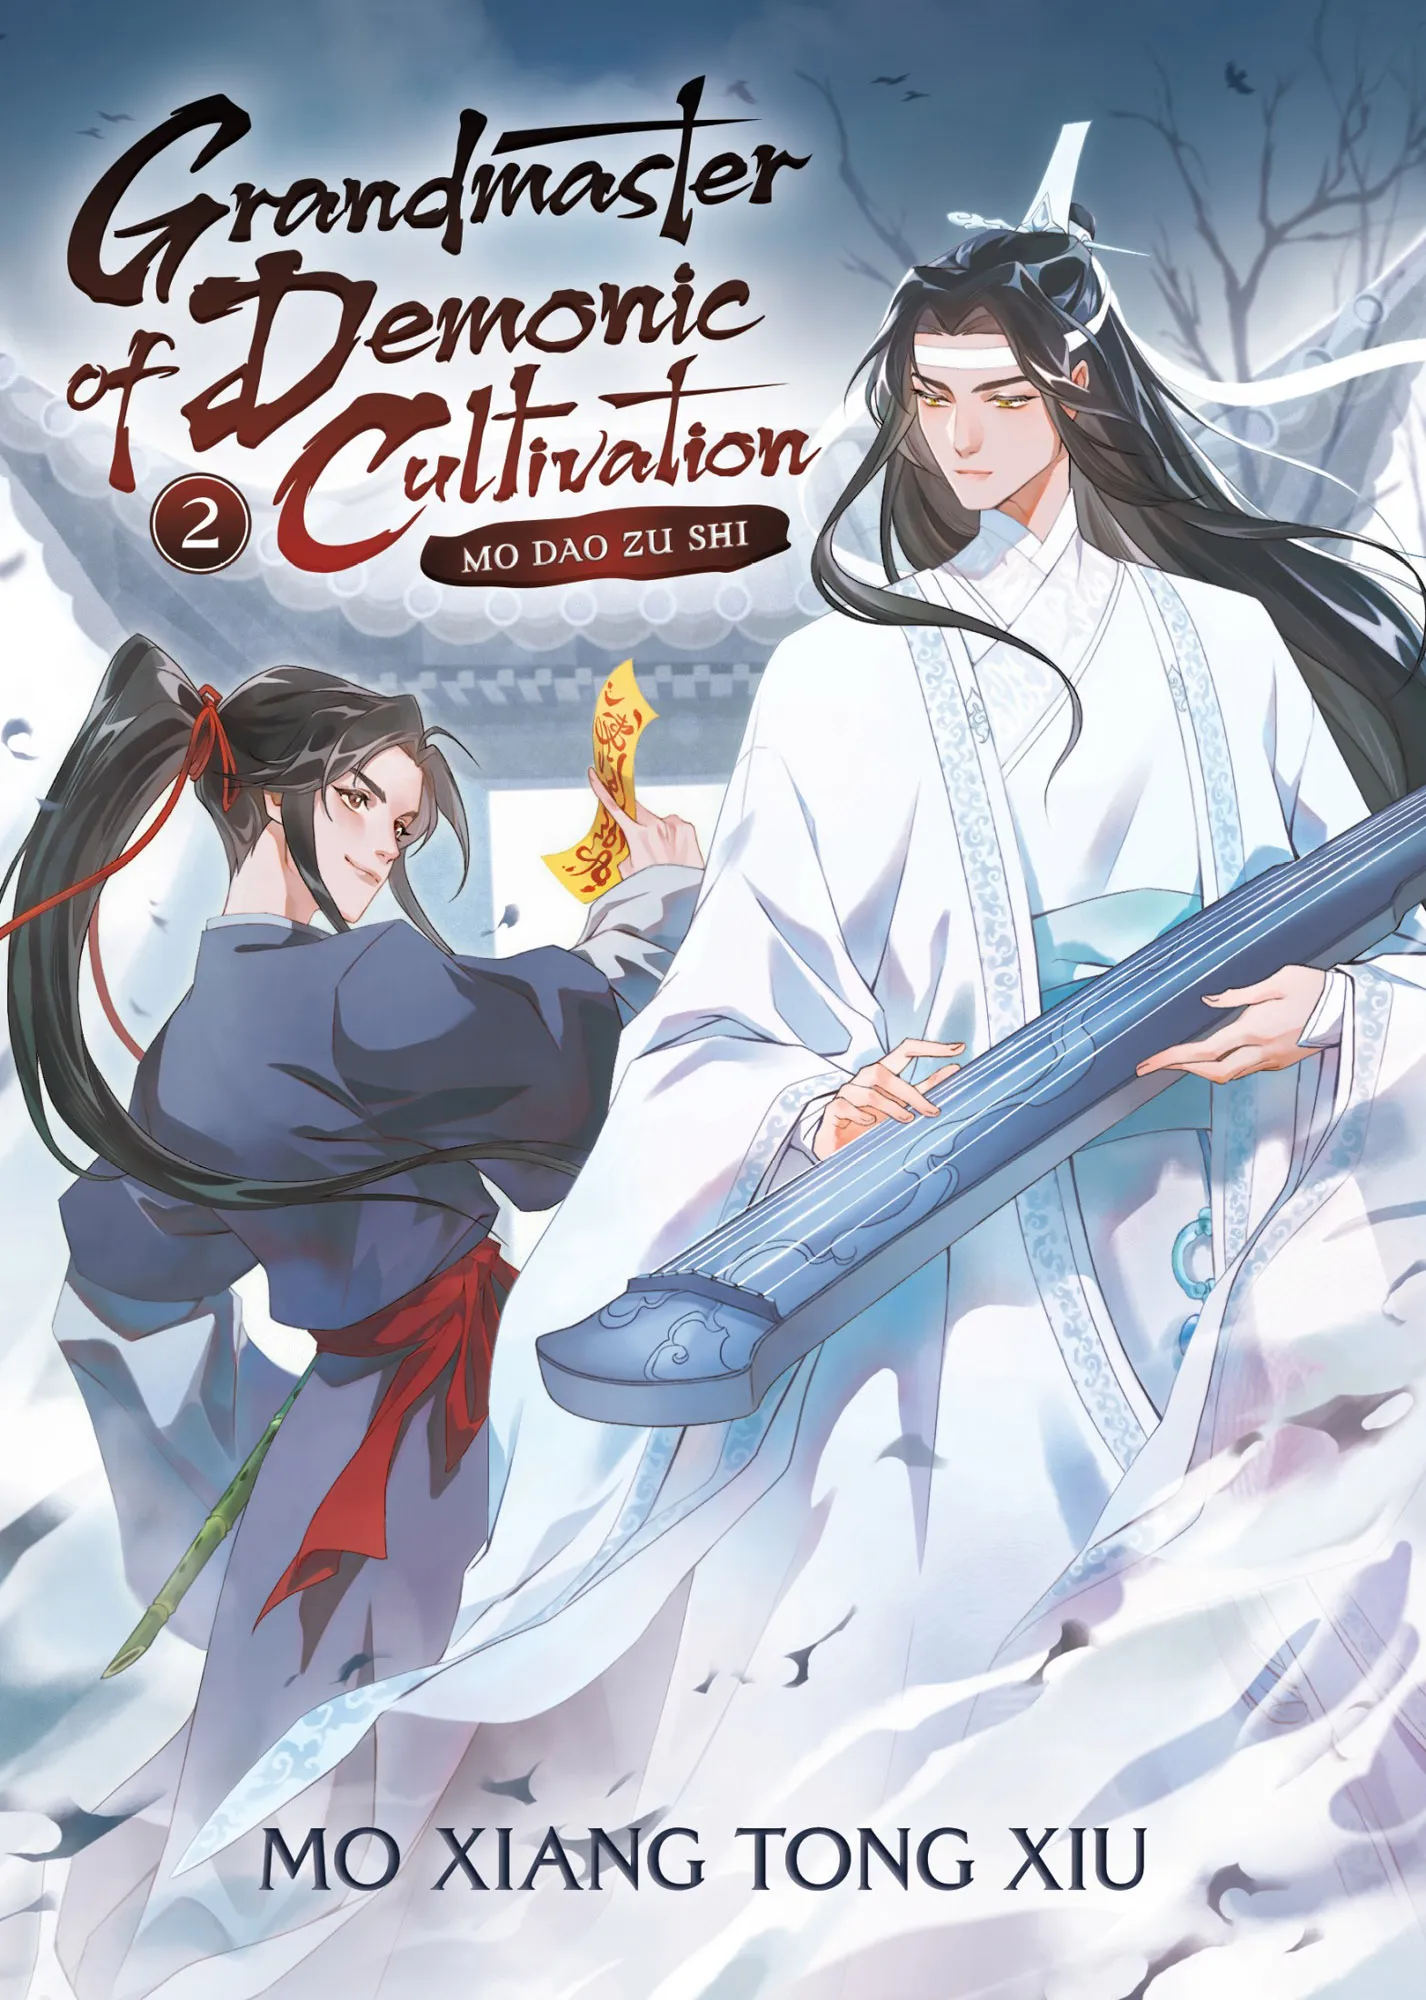 Mo Dao Zu Shi (Novel) Vol. 2 (Grandmaster of Demonic Cultivation: Mo Dao Zu Shi #2)